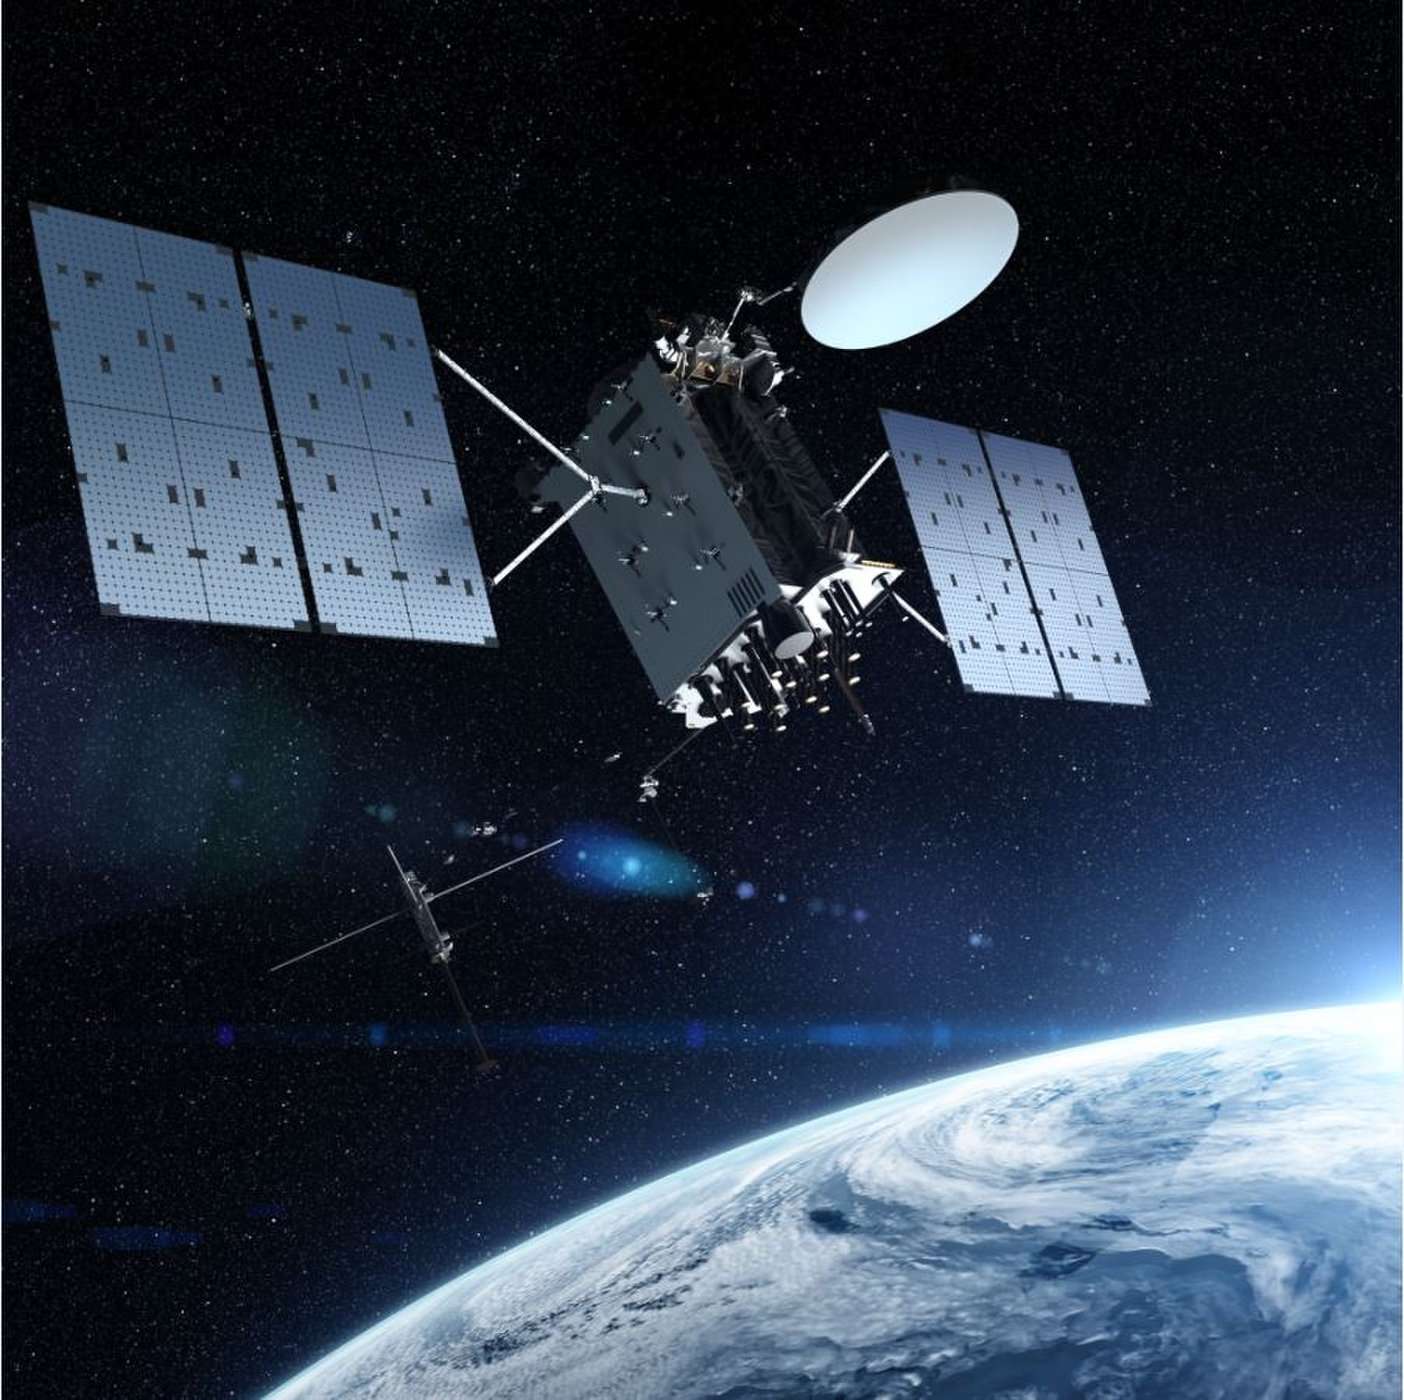 Η Space X εκτόξευσε τον πιο ισχυρό στρατιωτικό δορυφόρο GPS των ΗΠΑ